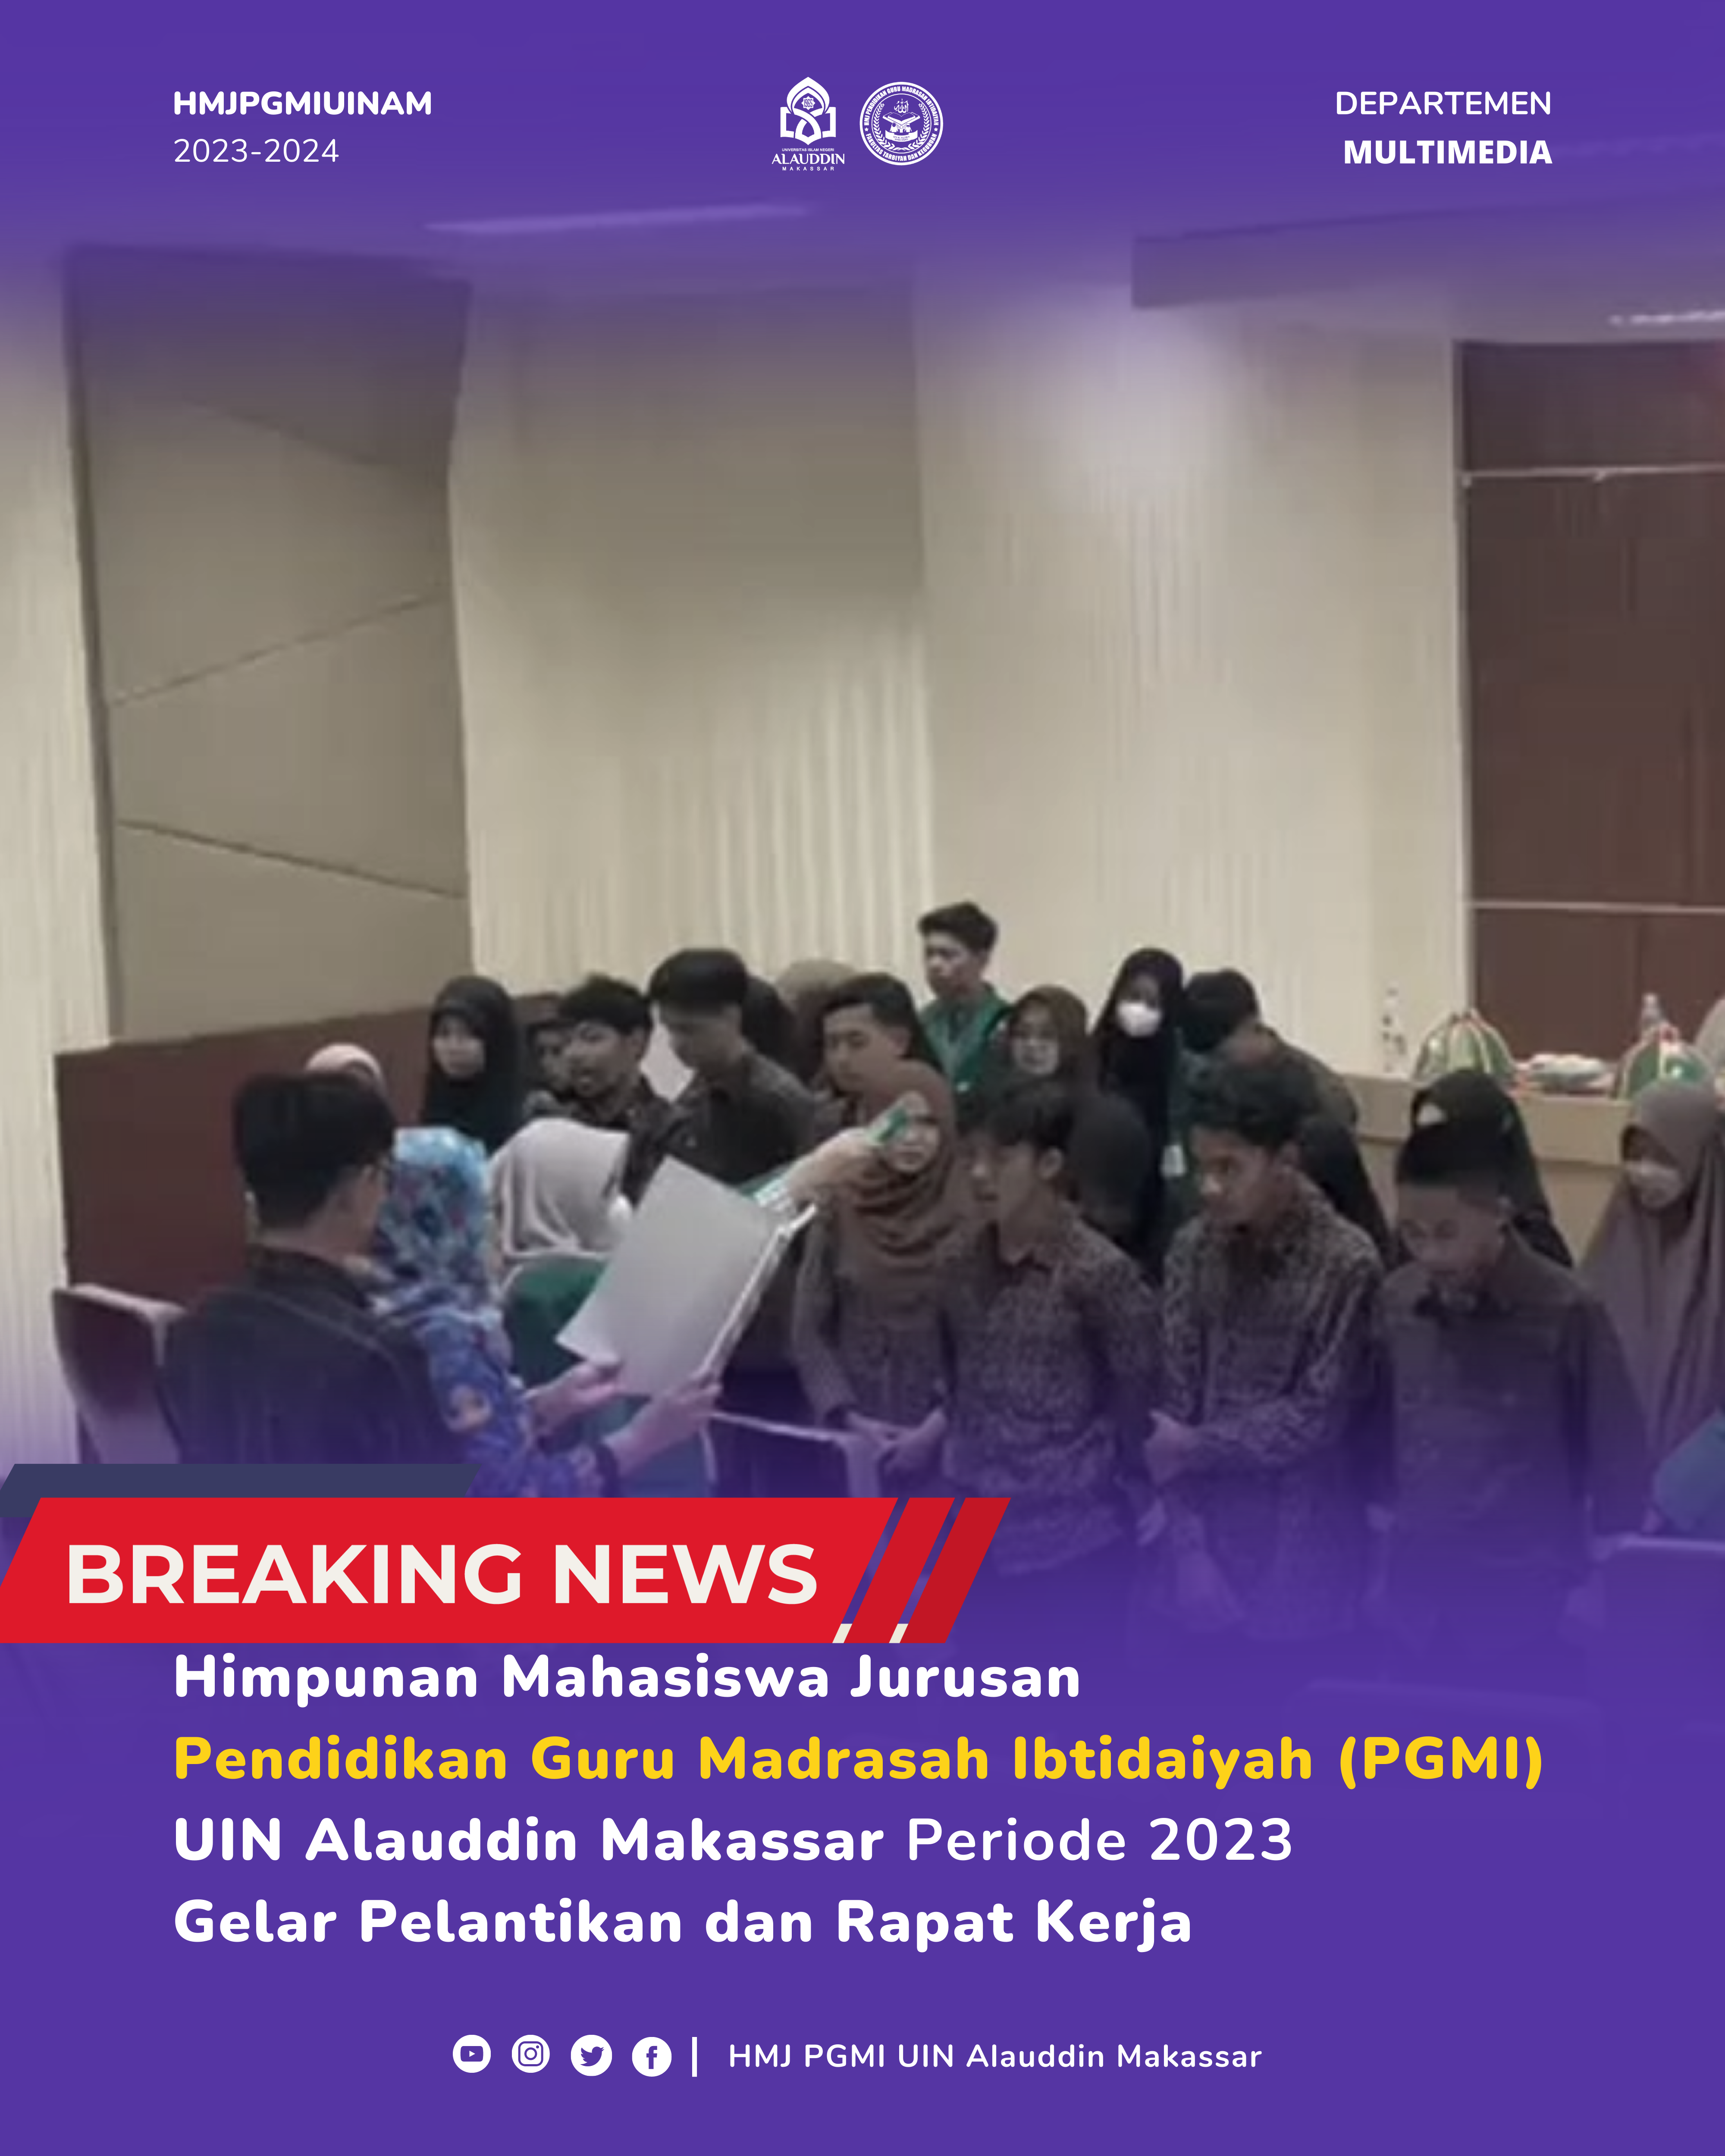 Himpunan Mahasiswa Jurusan Pendidikan Guru Madrasah Ibtidaiyah (PGMI) UIN Alauddin Makassar Periode 2023 Gelar Pelantikan dan Rapat Kerja